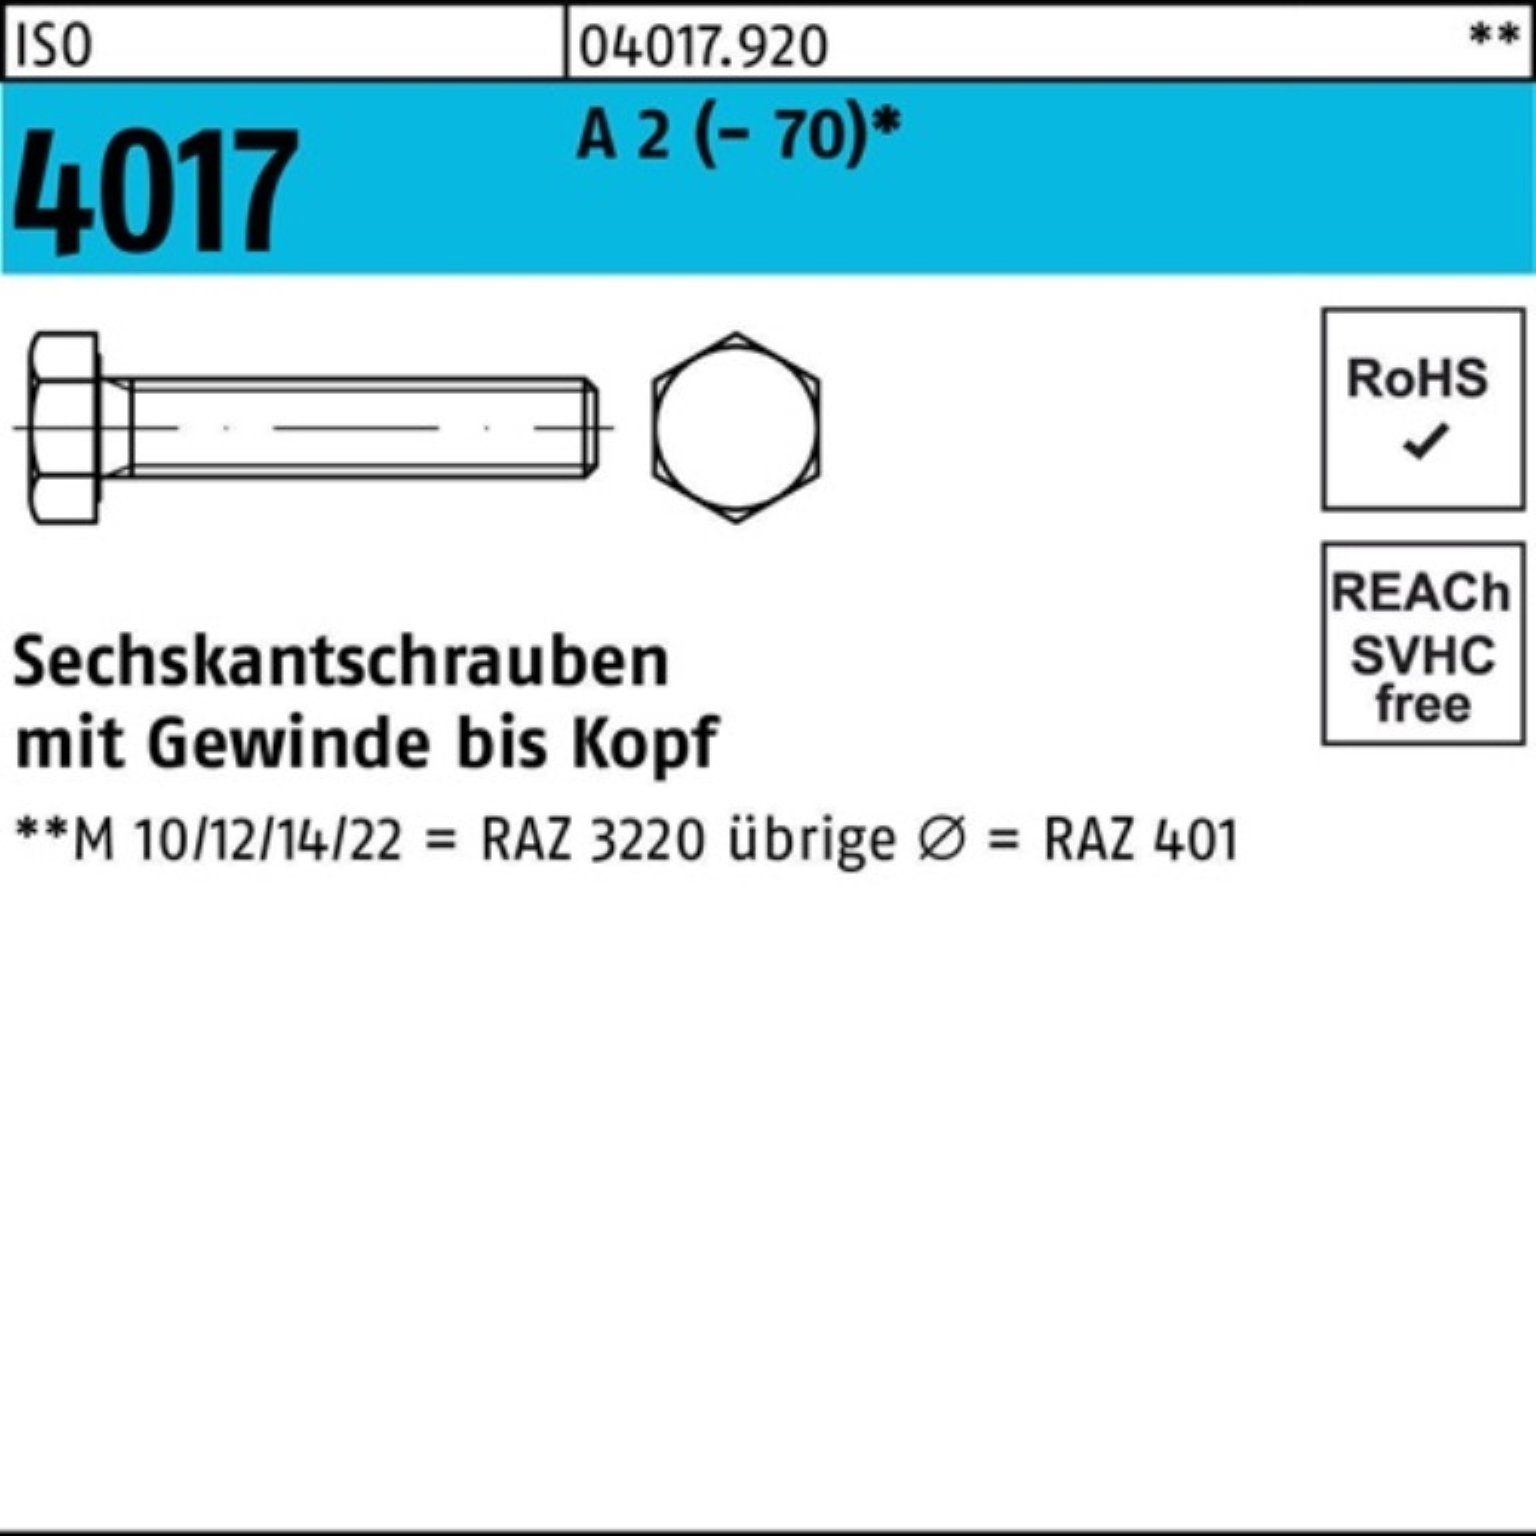 Bufab Sechskantschraube 100er Pack Sechskantschraube ISO 4017 VG M22x 120 A 2 (70) 10 Stück